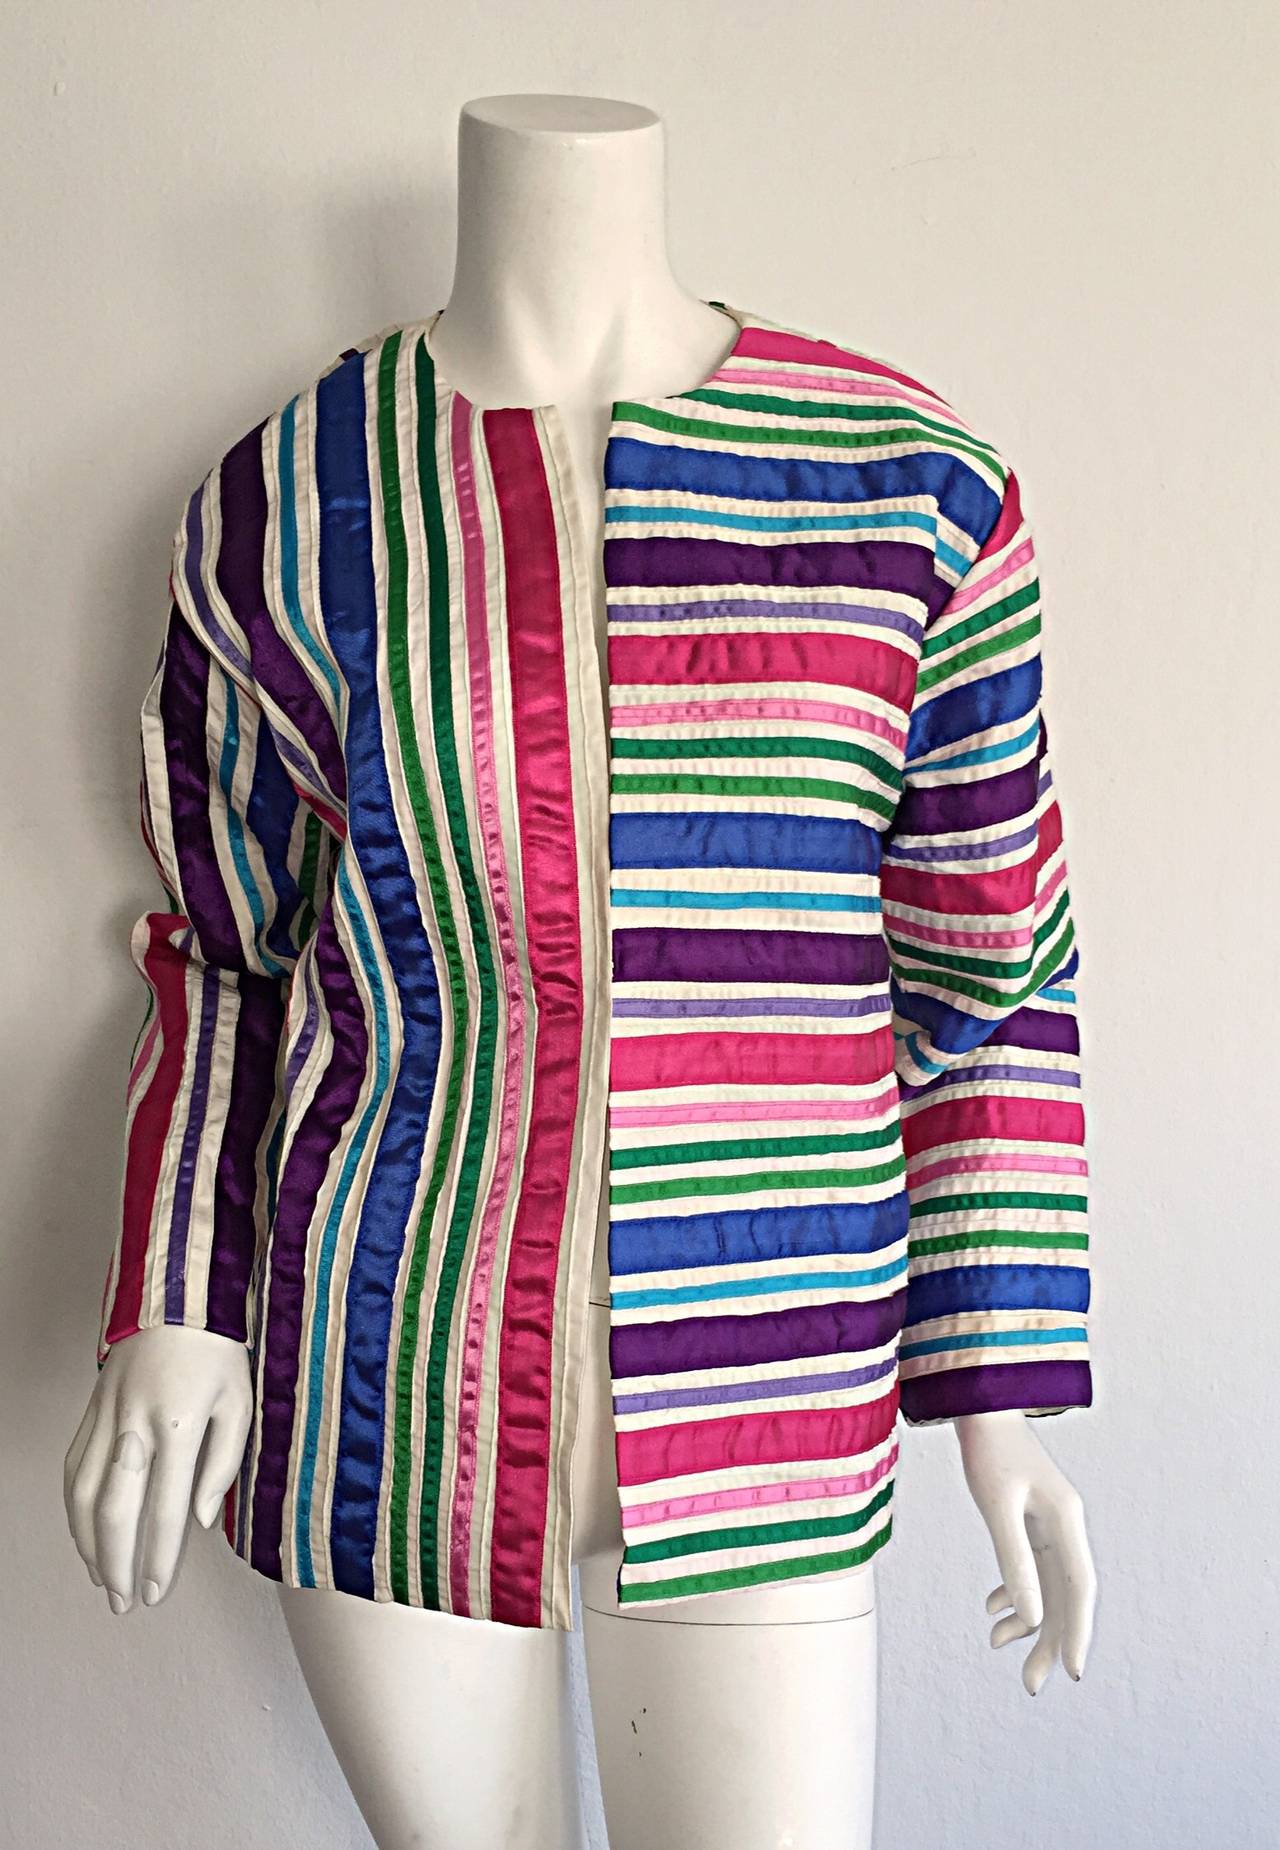 Erstaunlich Vintage Tachi Castillo Baumwolle Jacke! Durchgehend mit Tafeln mit bunten Bändern versehen. Haken- und Ösenverschluss auf der Vorderseite. Sieht toll aus! Äußerst vielseitig. In gutem Zustand. Ungefähr Größe